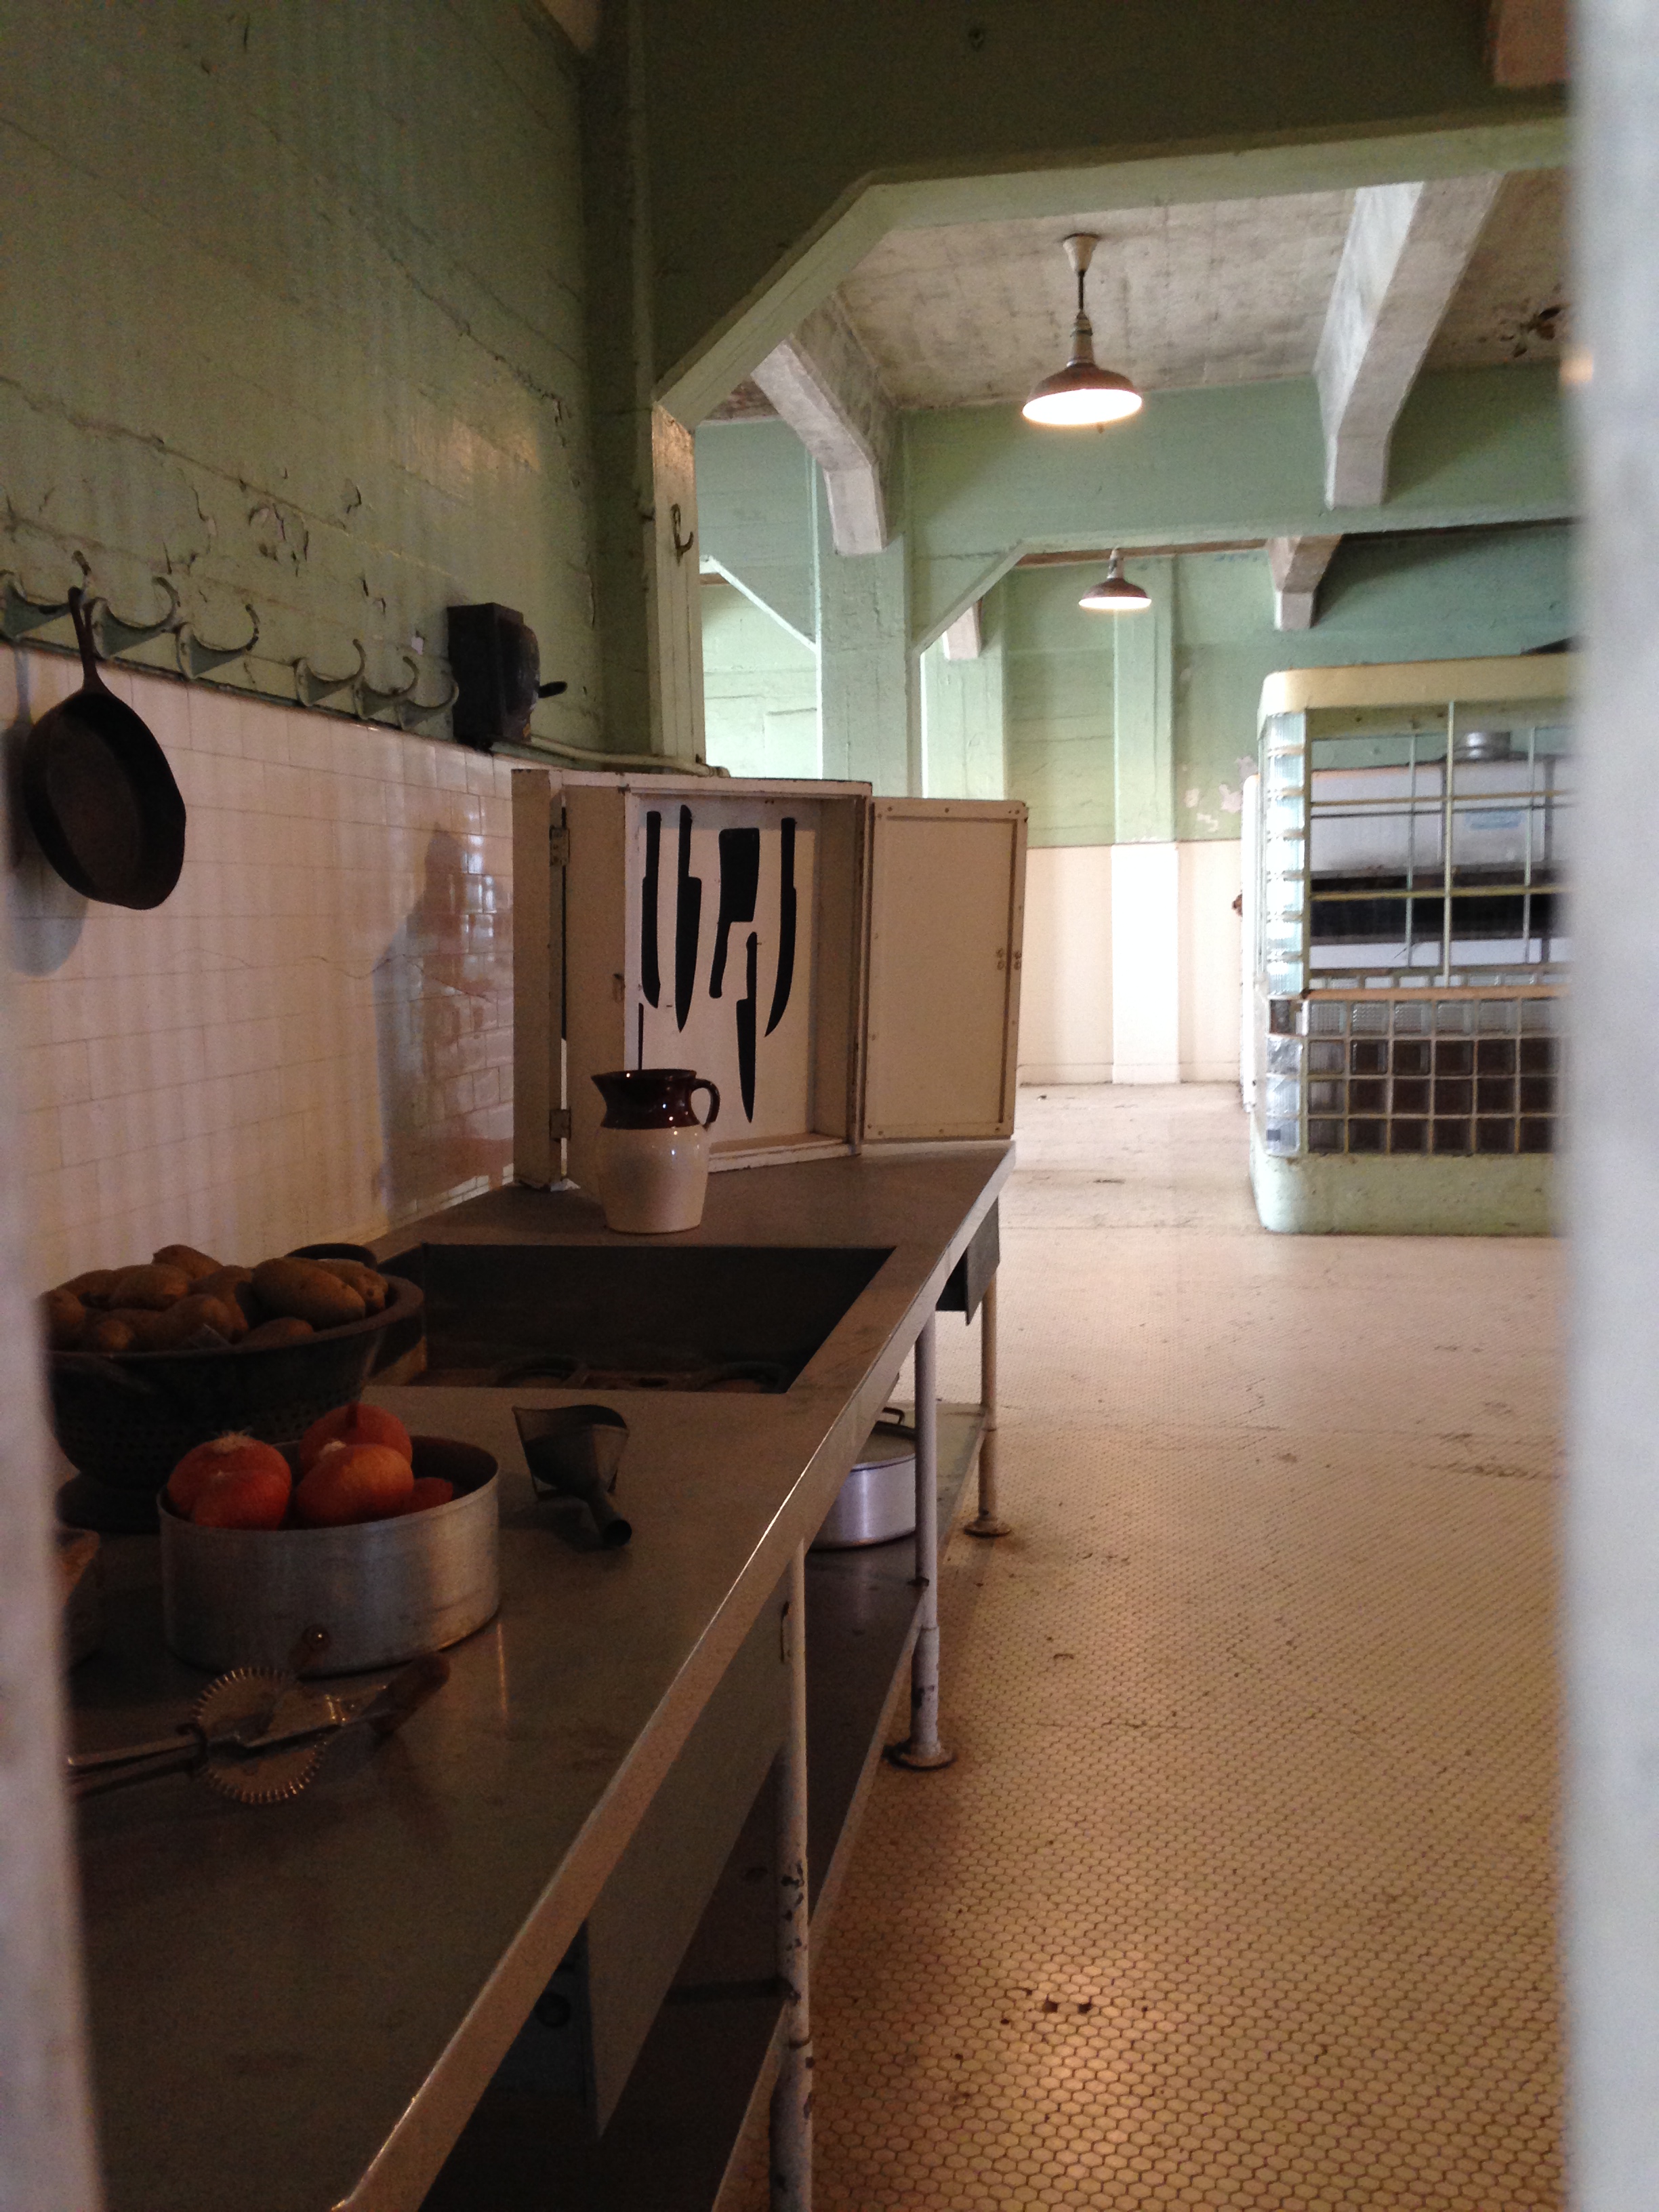 20140426 233947652 ios - Una visita a la Cárcel de Alcatraz